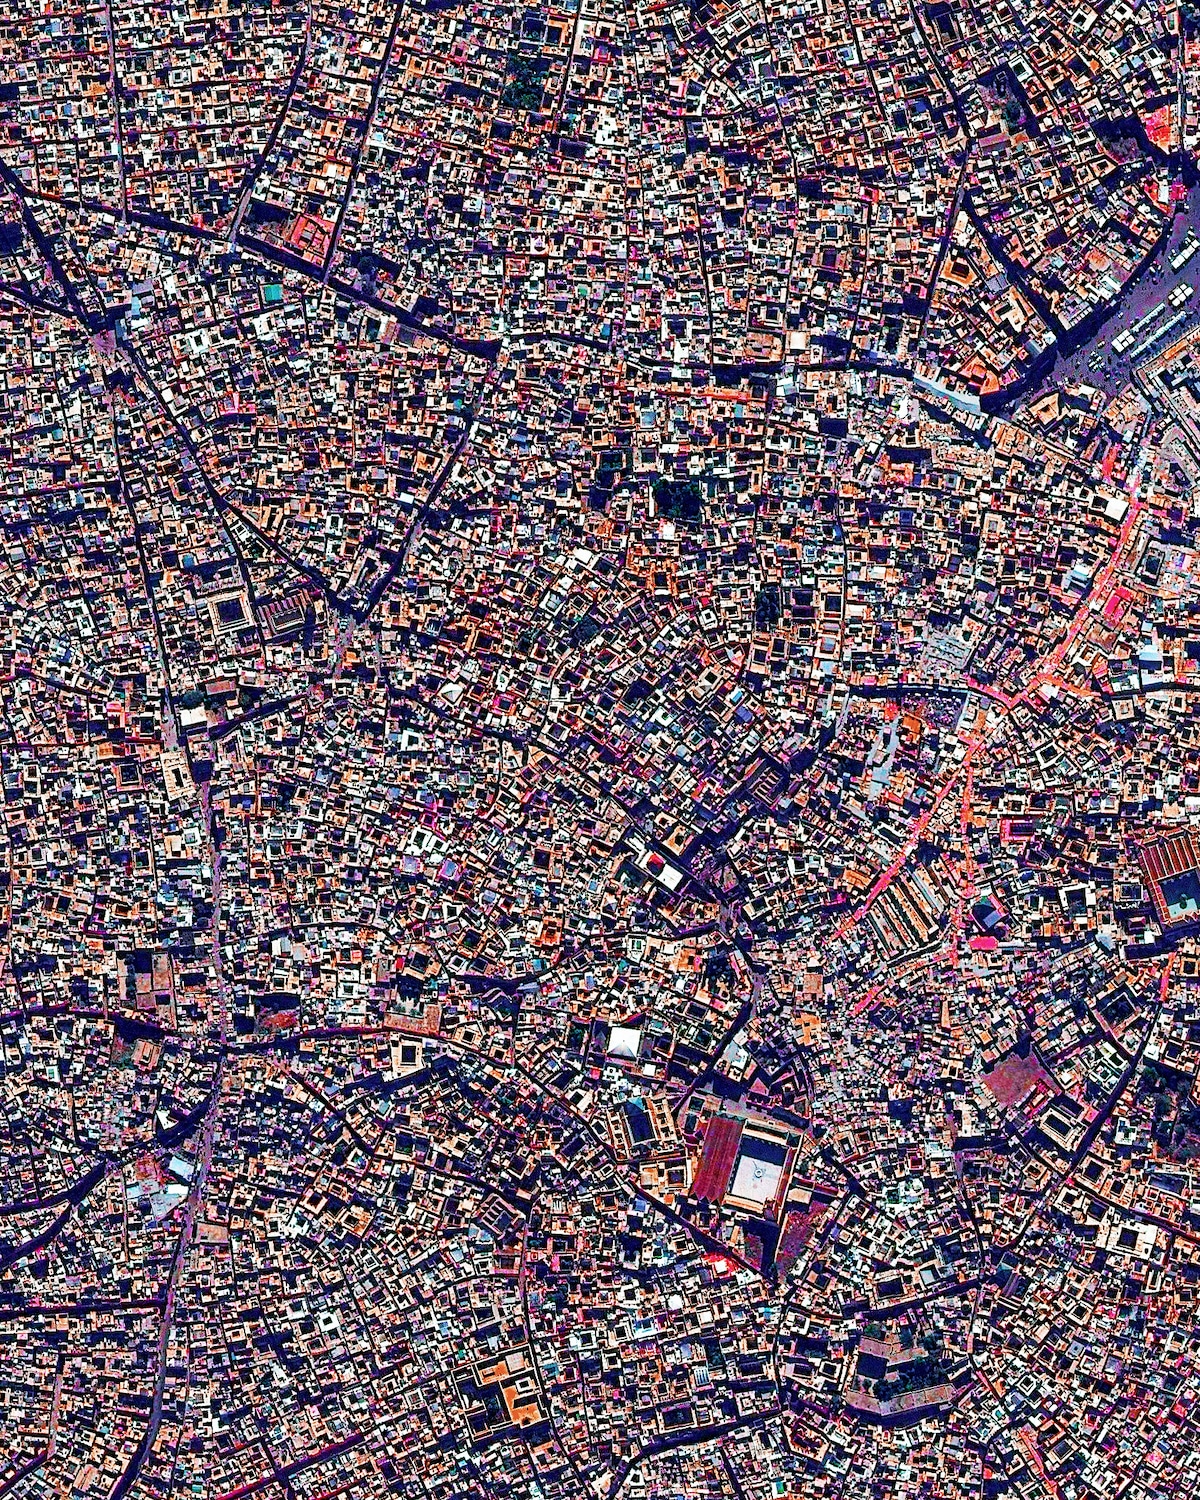 vista aerea de Marrakech